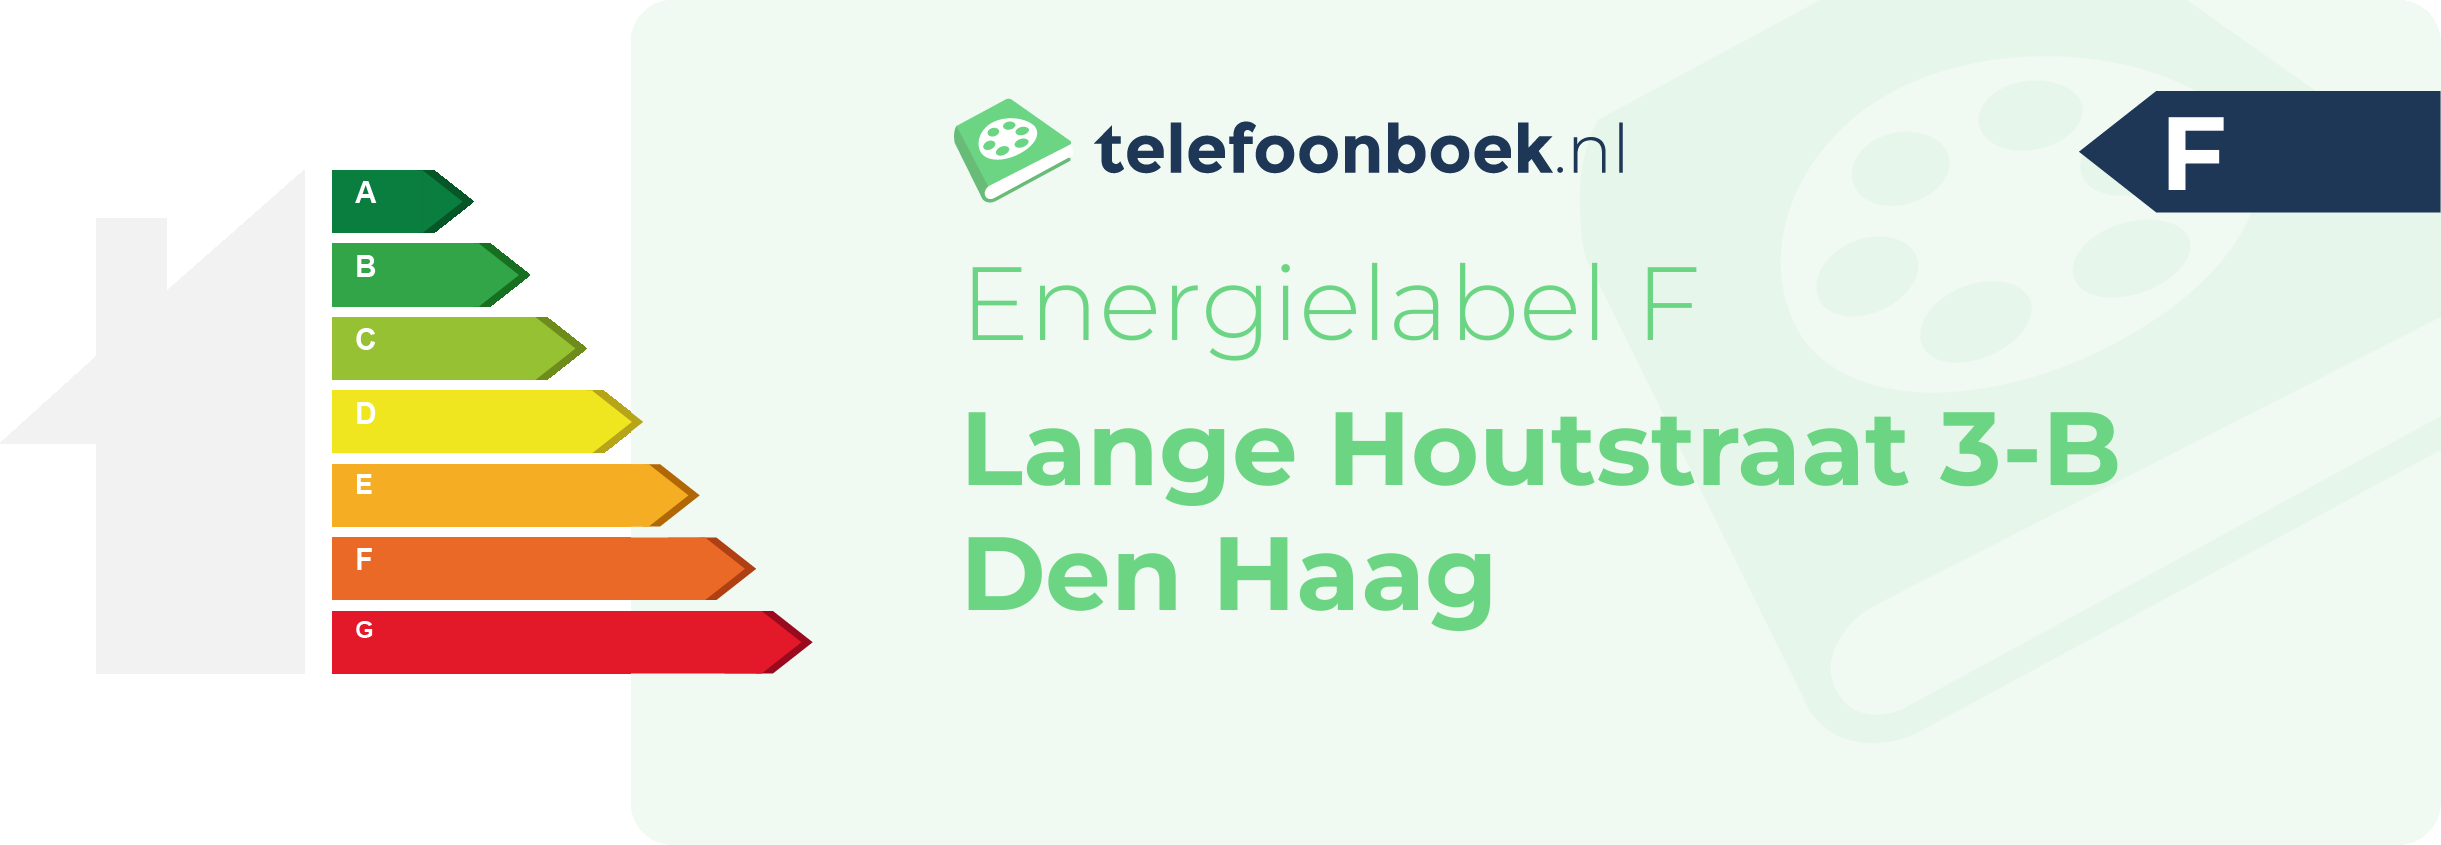 Energielabel Lange Houtstraat 3-B Den Haag